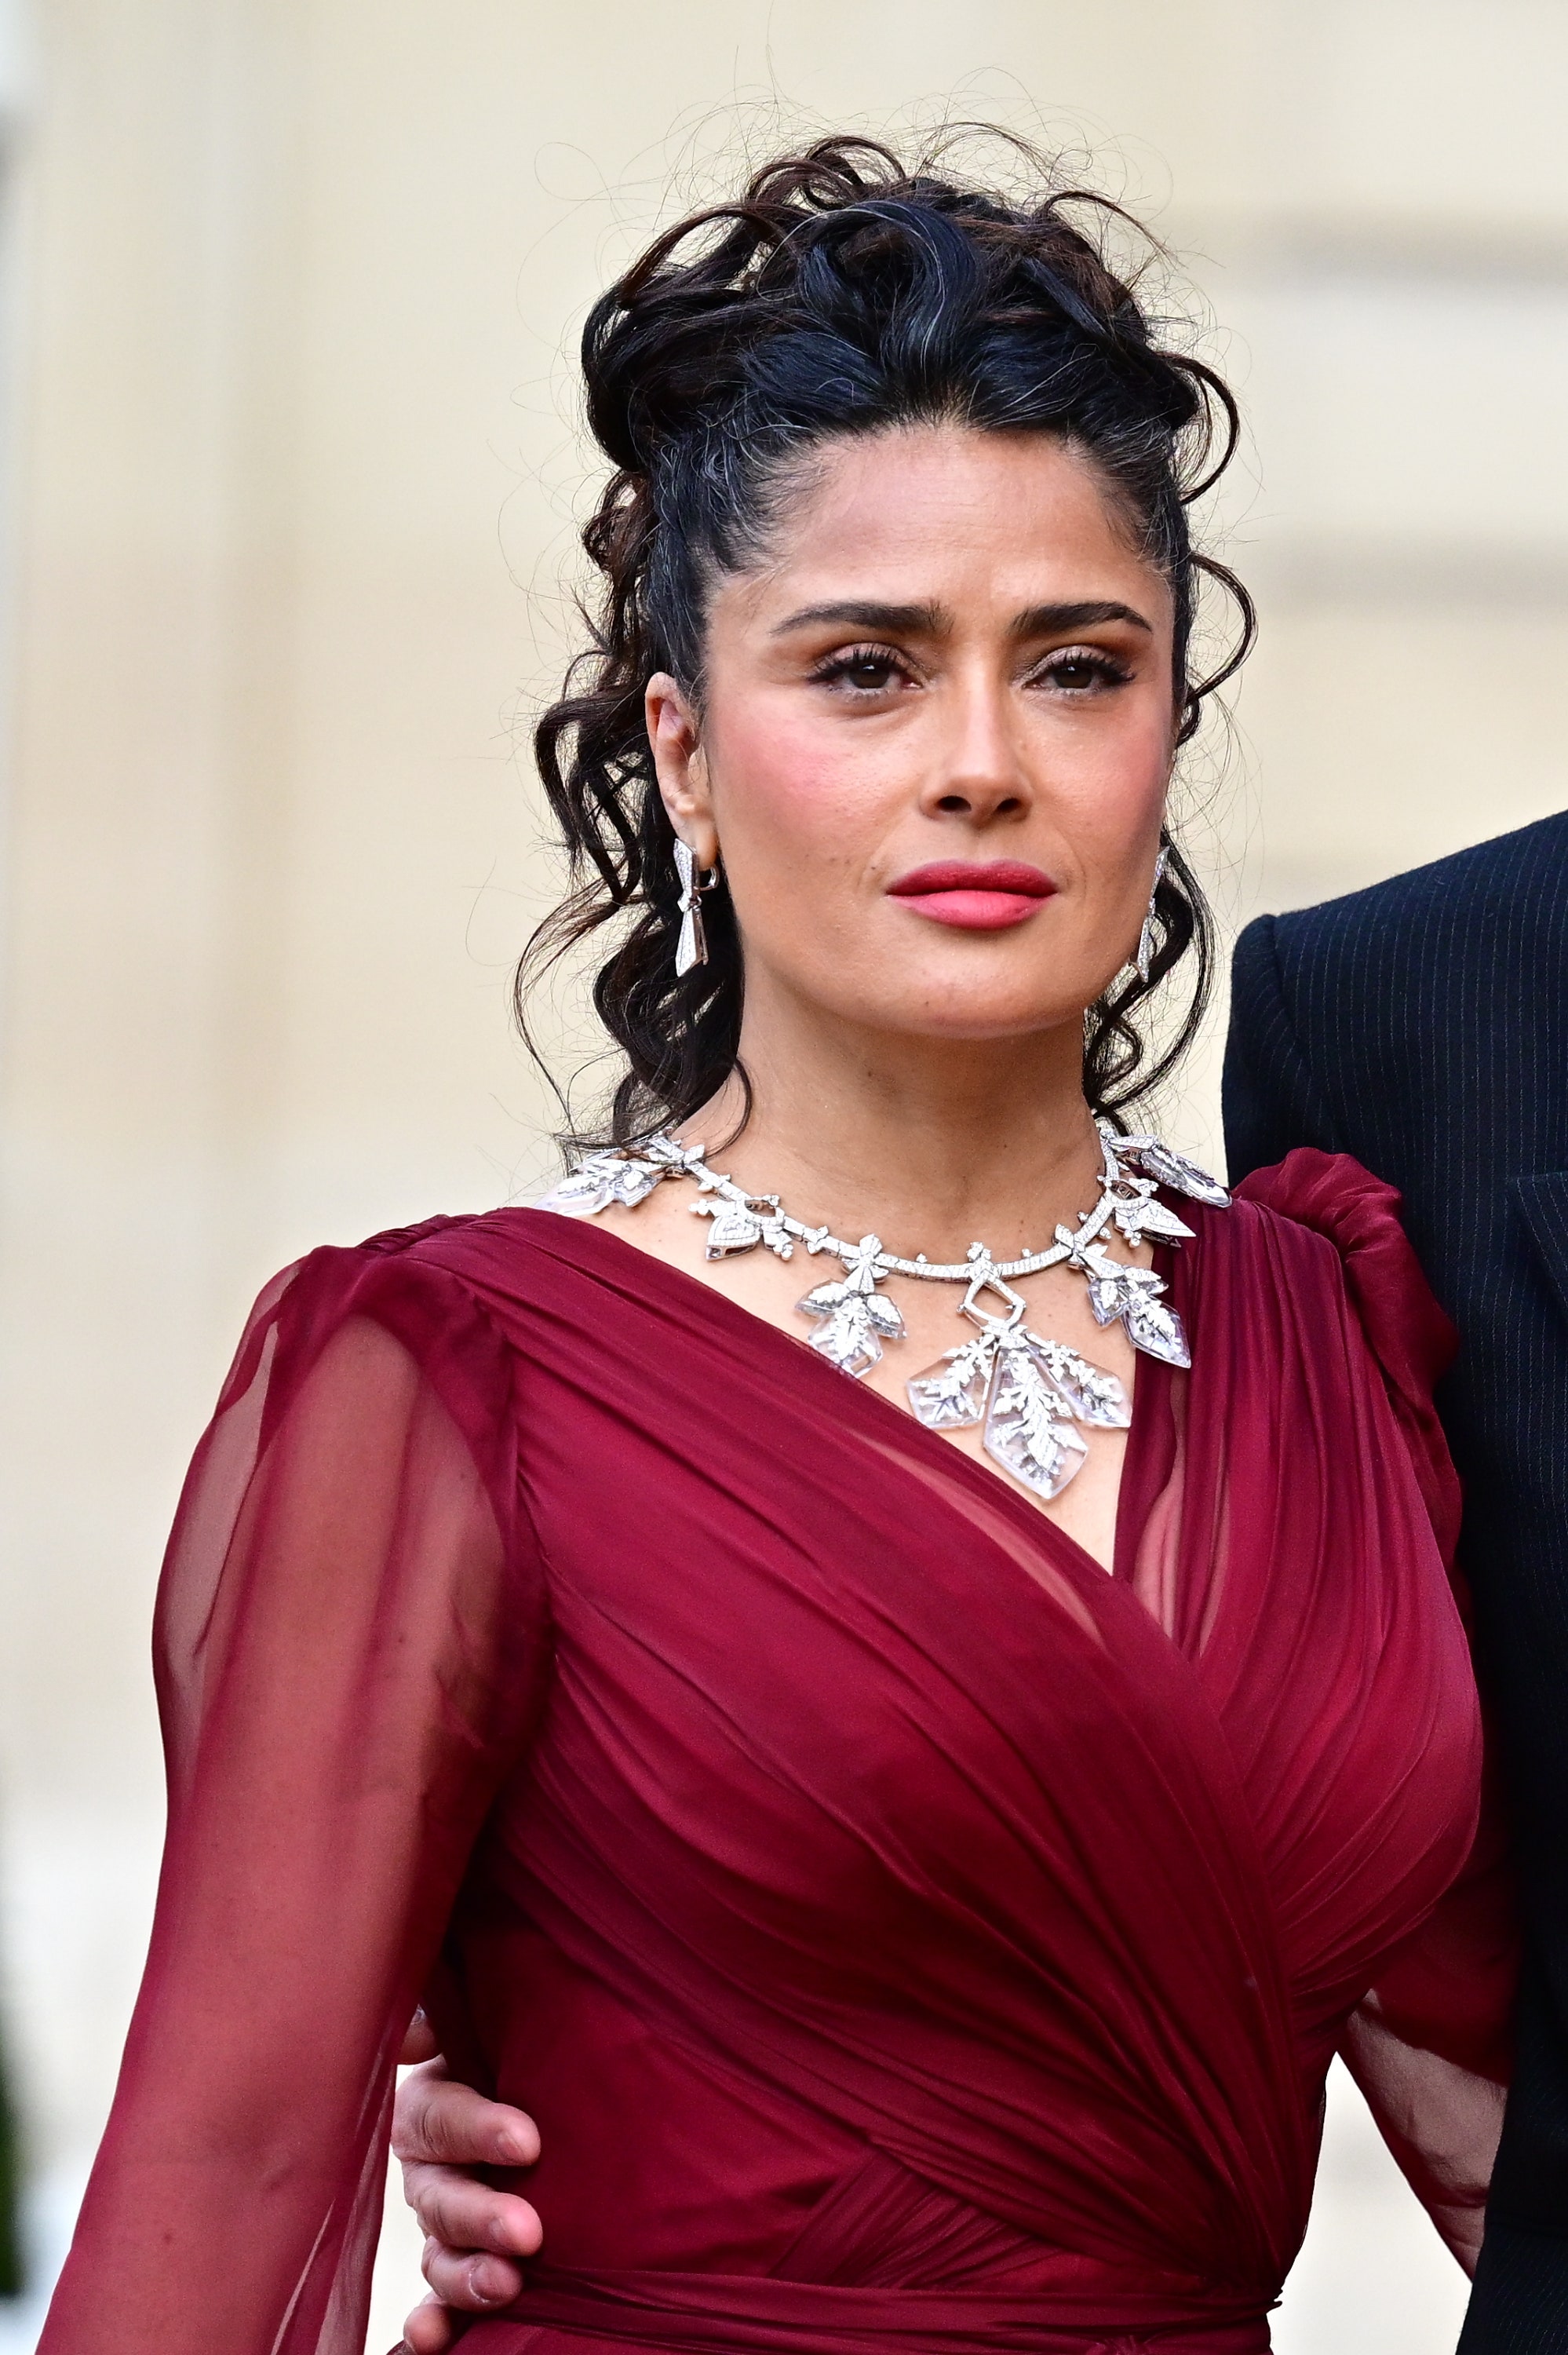 salma hayek demuestra que el vestido burdeos con accesorios plateados es la combinación más elegante